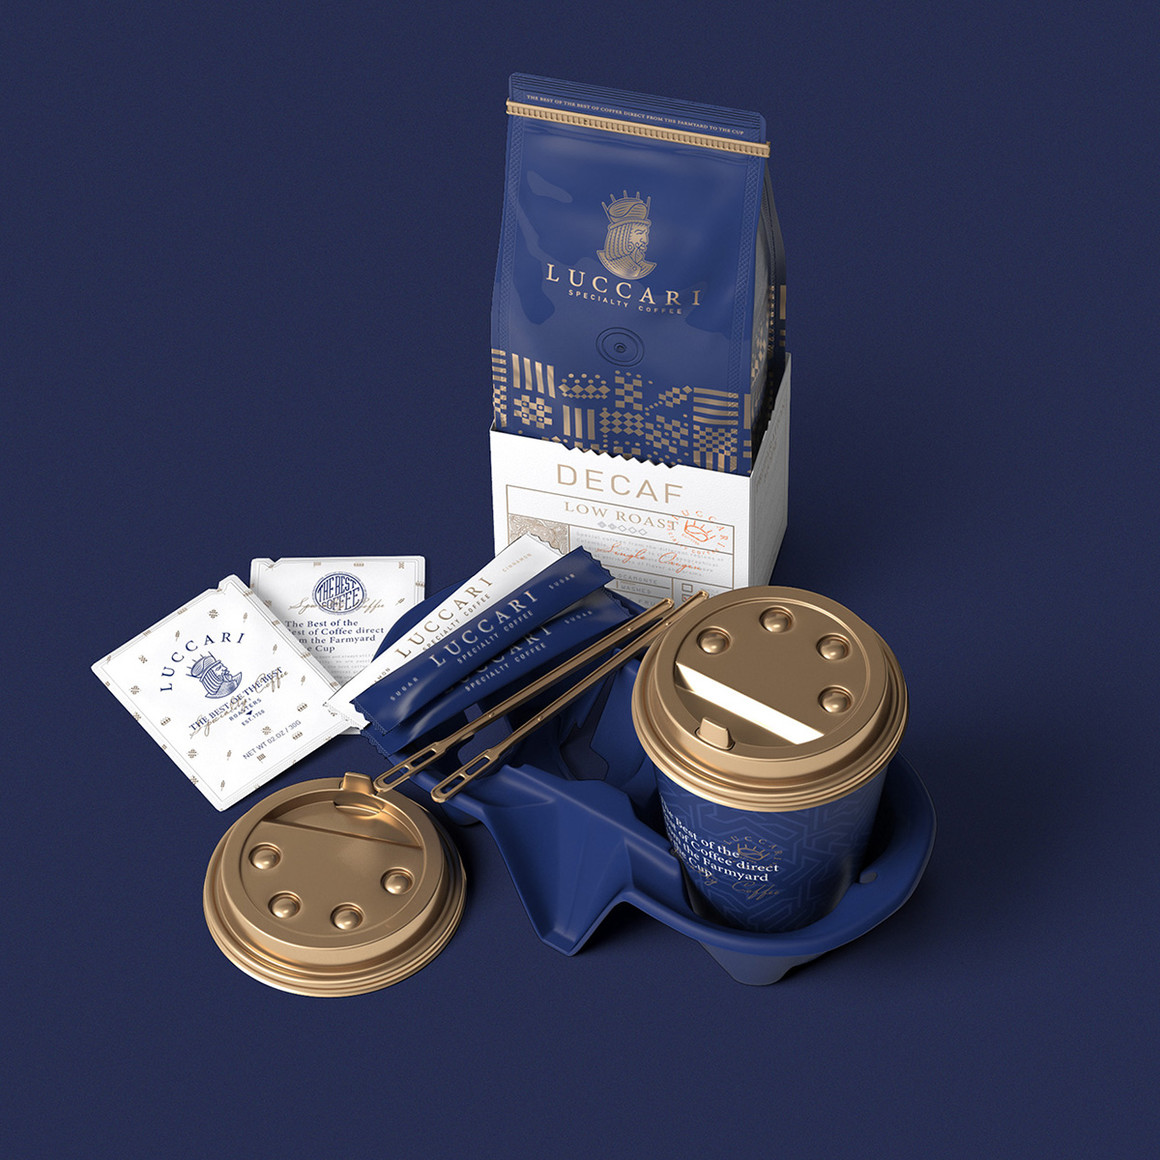 皇室咖啡特色标识品牌视觉设计